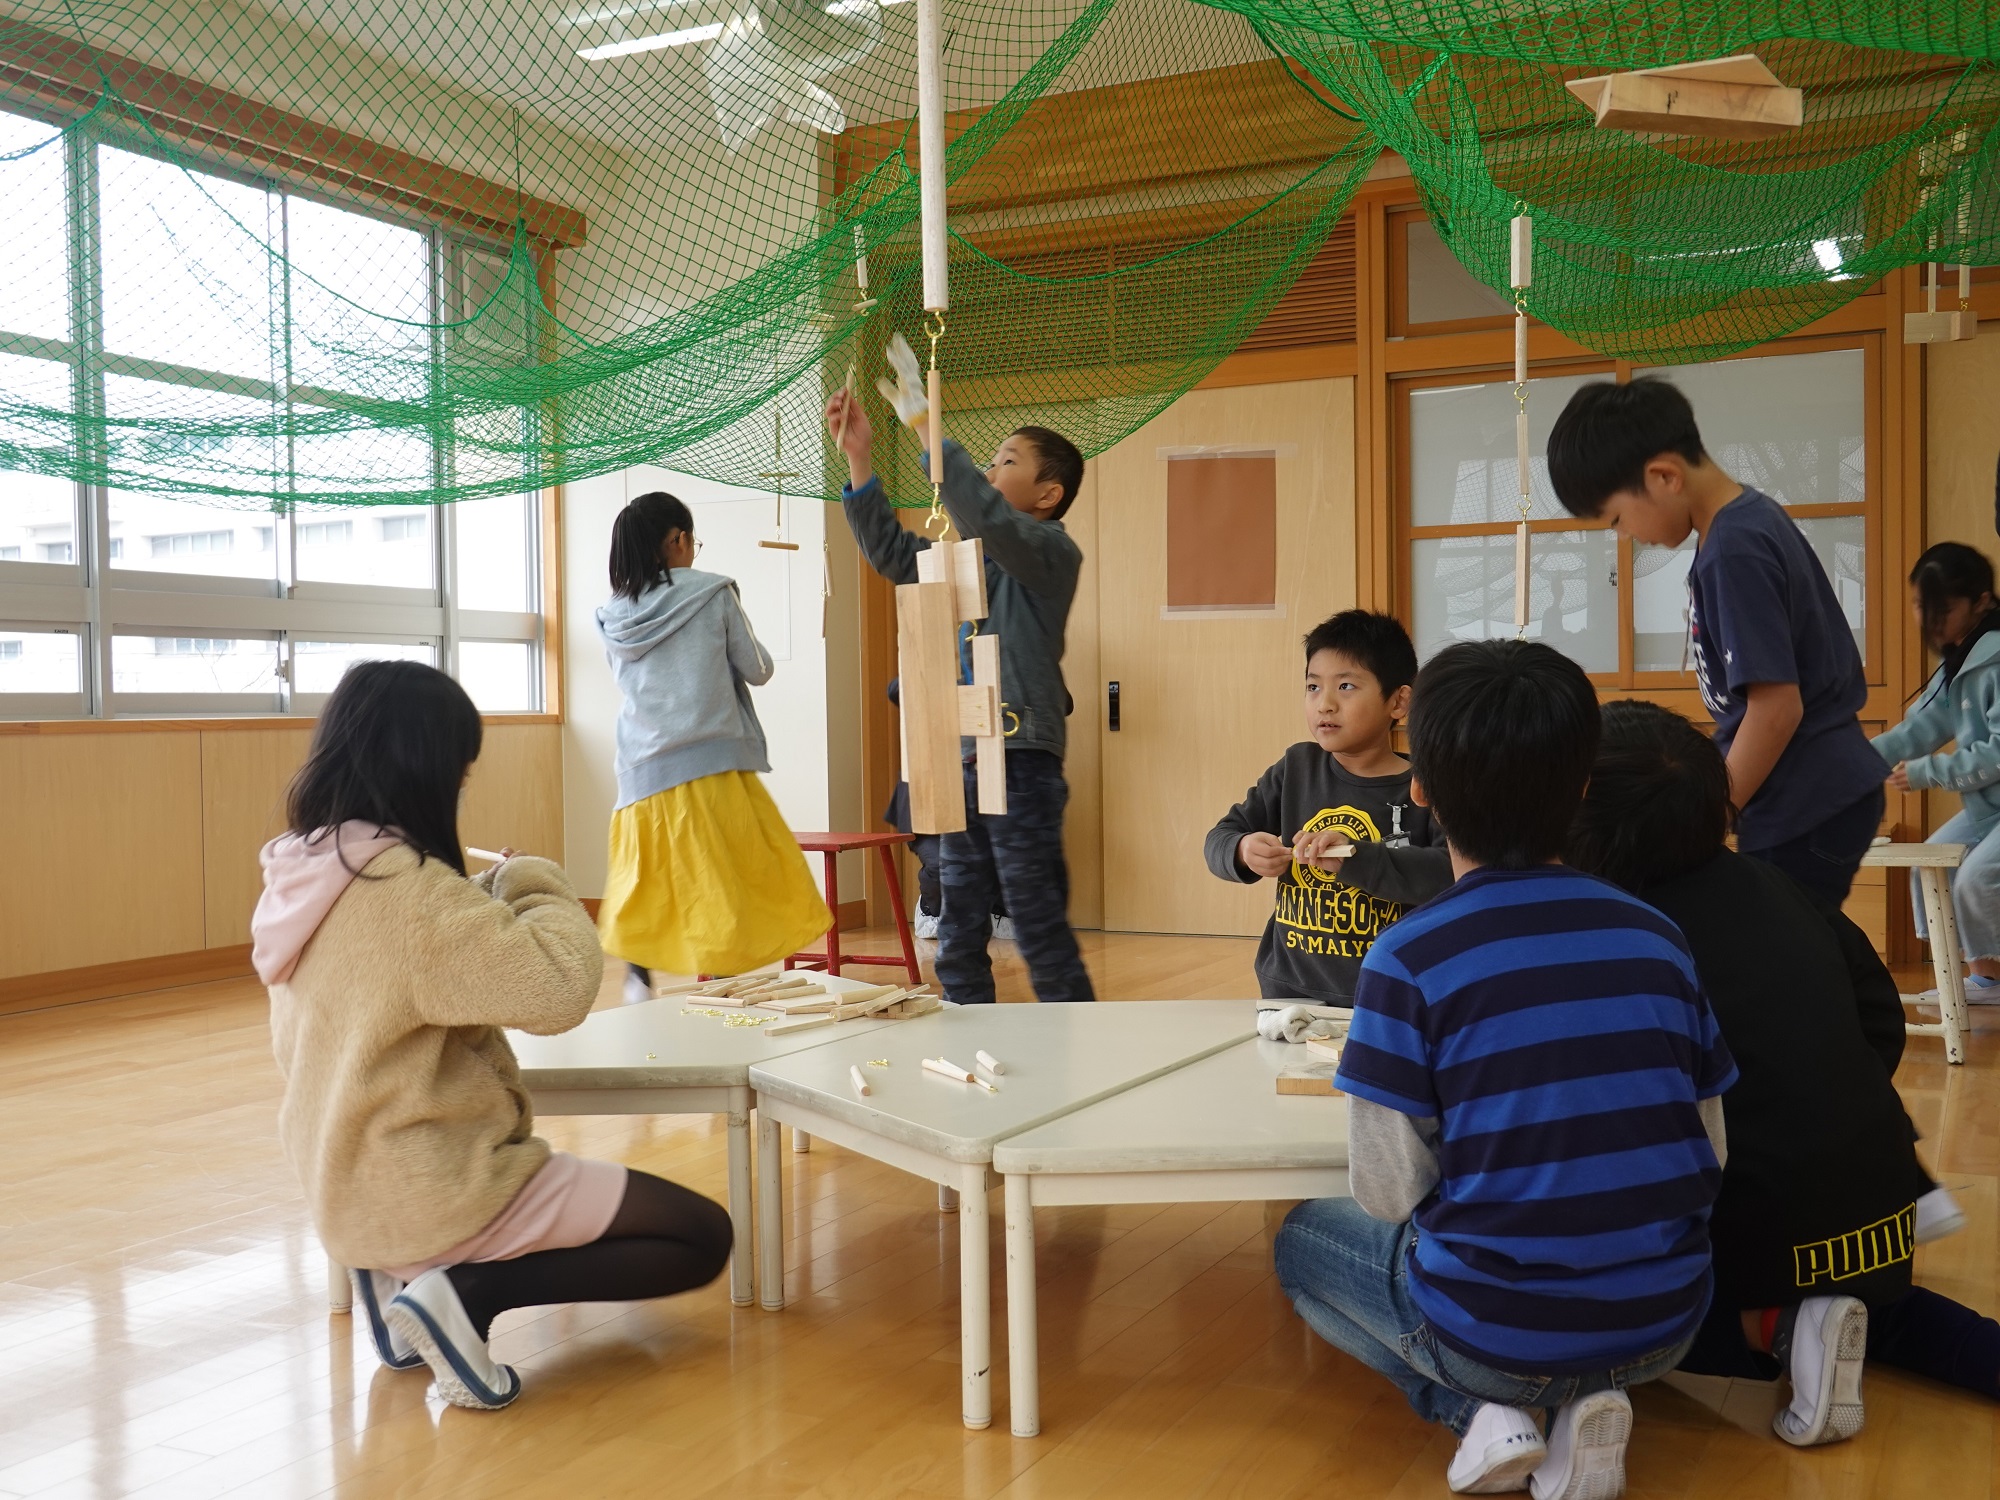 全造會名古屋小學校授課情況 五年級課程「木頭敲敲敲」